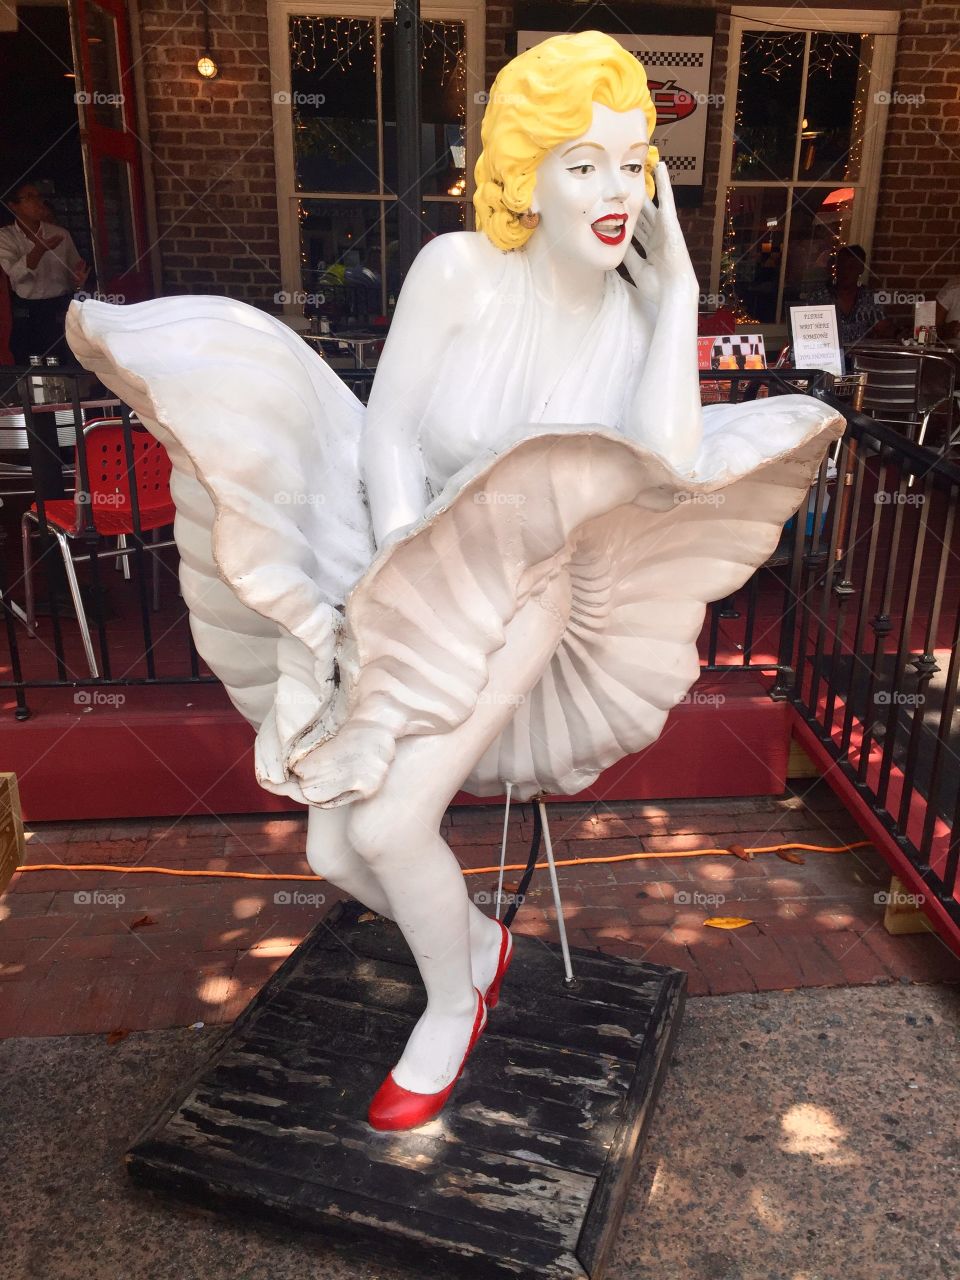 Marilyn Monroe in City Market